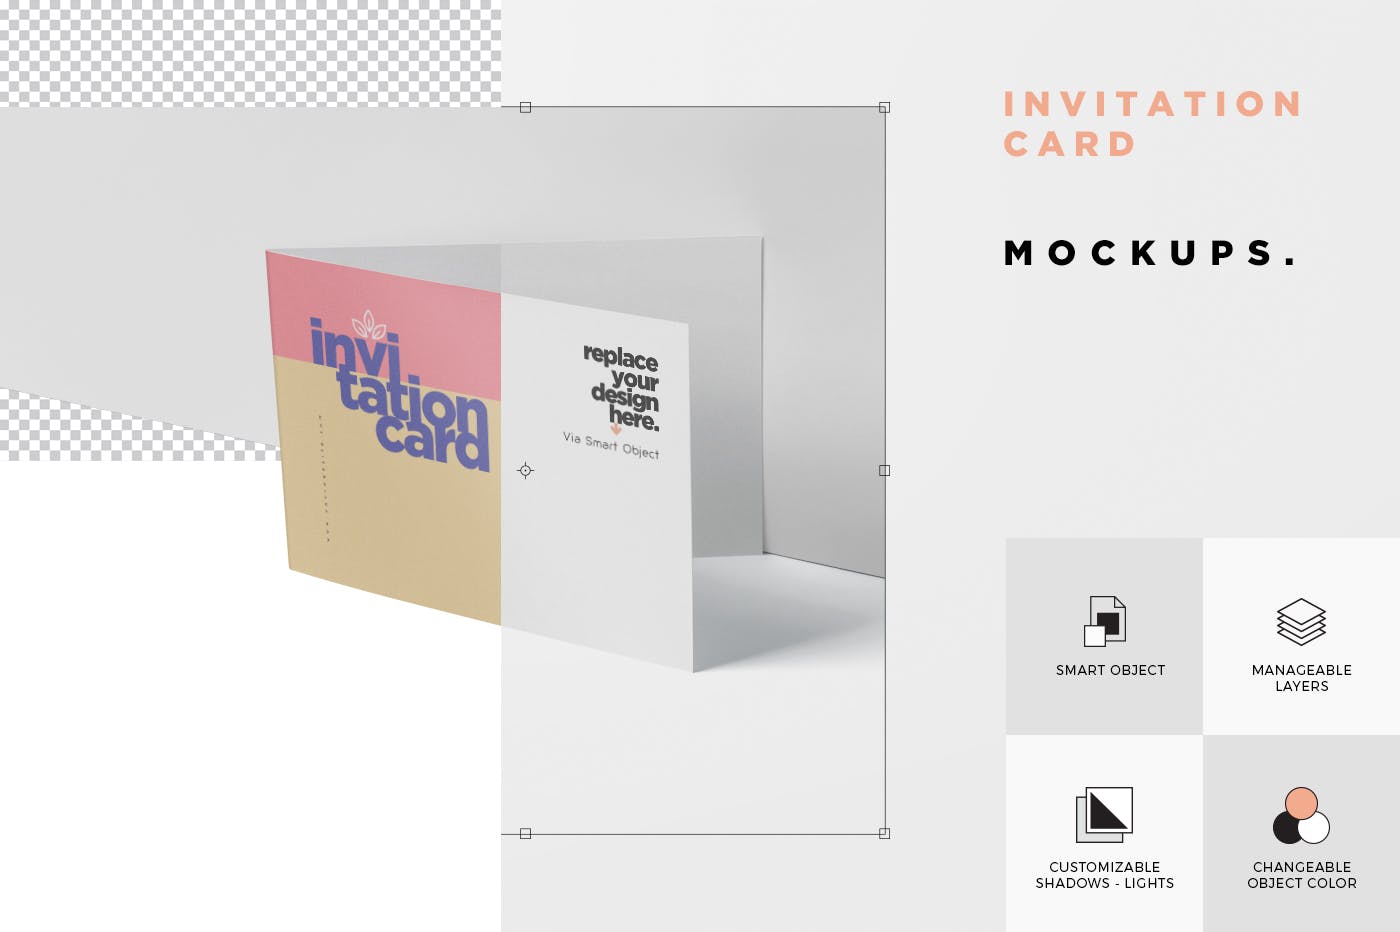 创意邀请卡/邀请函设计图样机蚂蚁素材精选 Invitation Card Mock-Up Set插图(5)